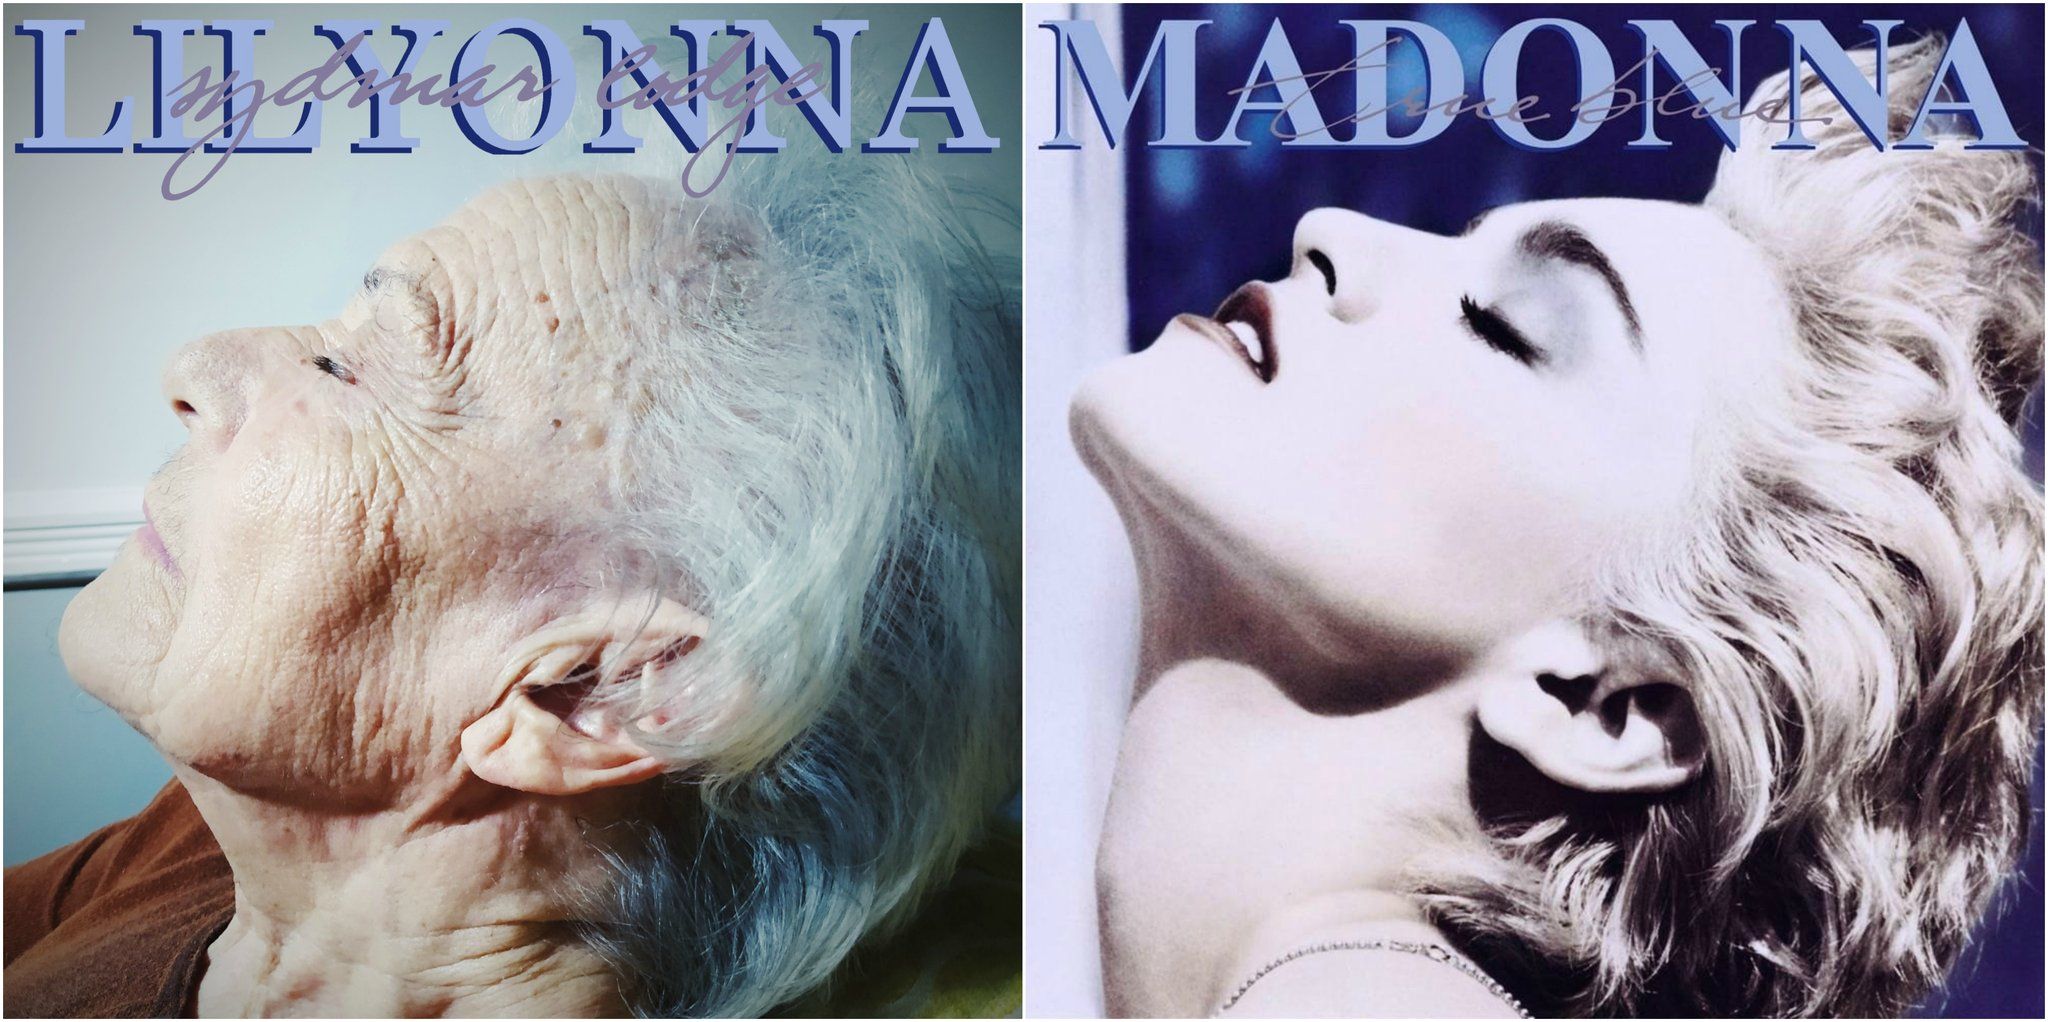 Lily en el True blue de Madonna